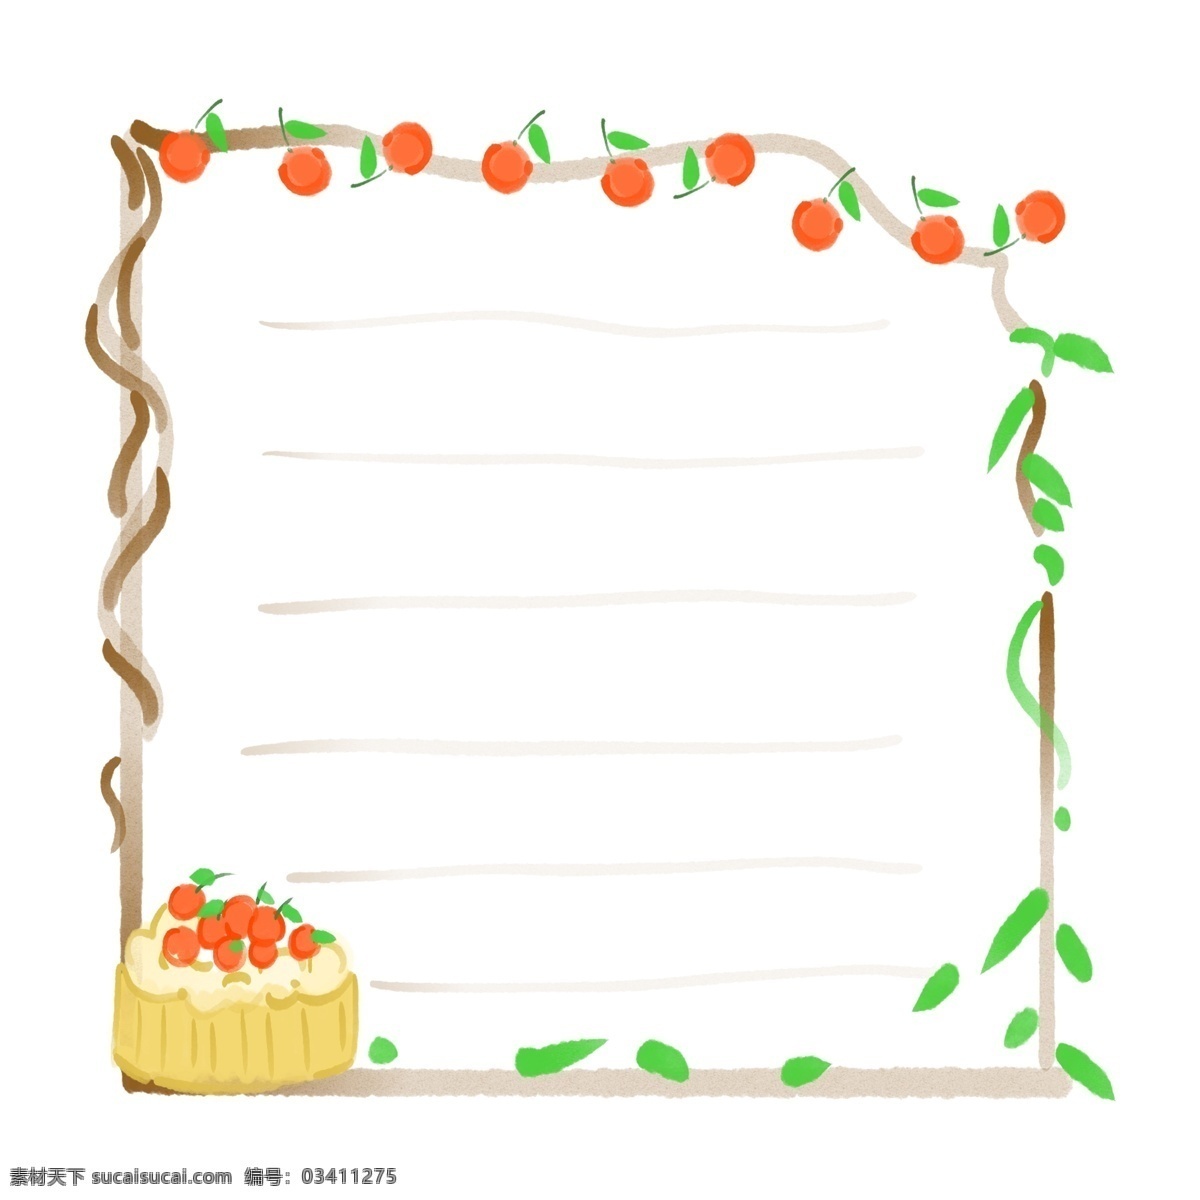 可爱 水果 蛋糕 边框 红色的水果 卡通边框 小物边框 物品边框 可爱边框 创意边框 樱桃的边框